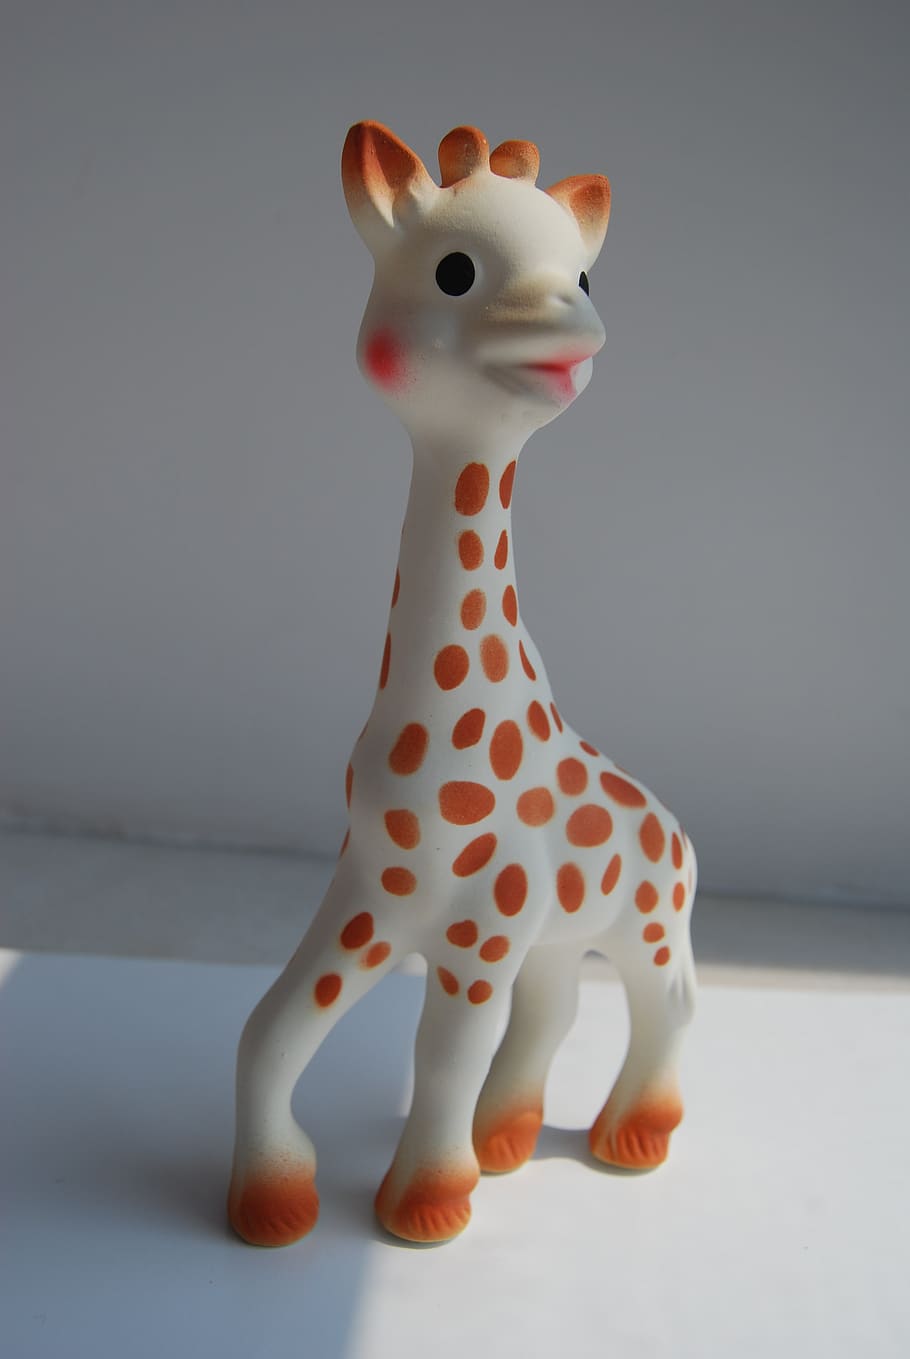 sophie, girafa, brinquedos, mordedores, produtos para bebê, ninguém, representação animal, representação, arte e artesanato, dentro de casa